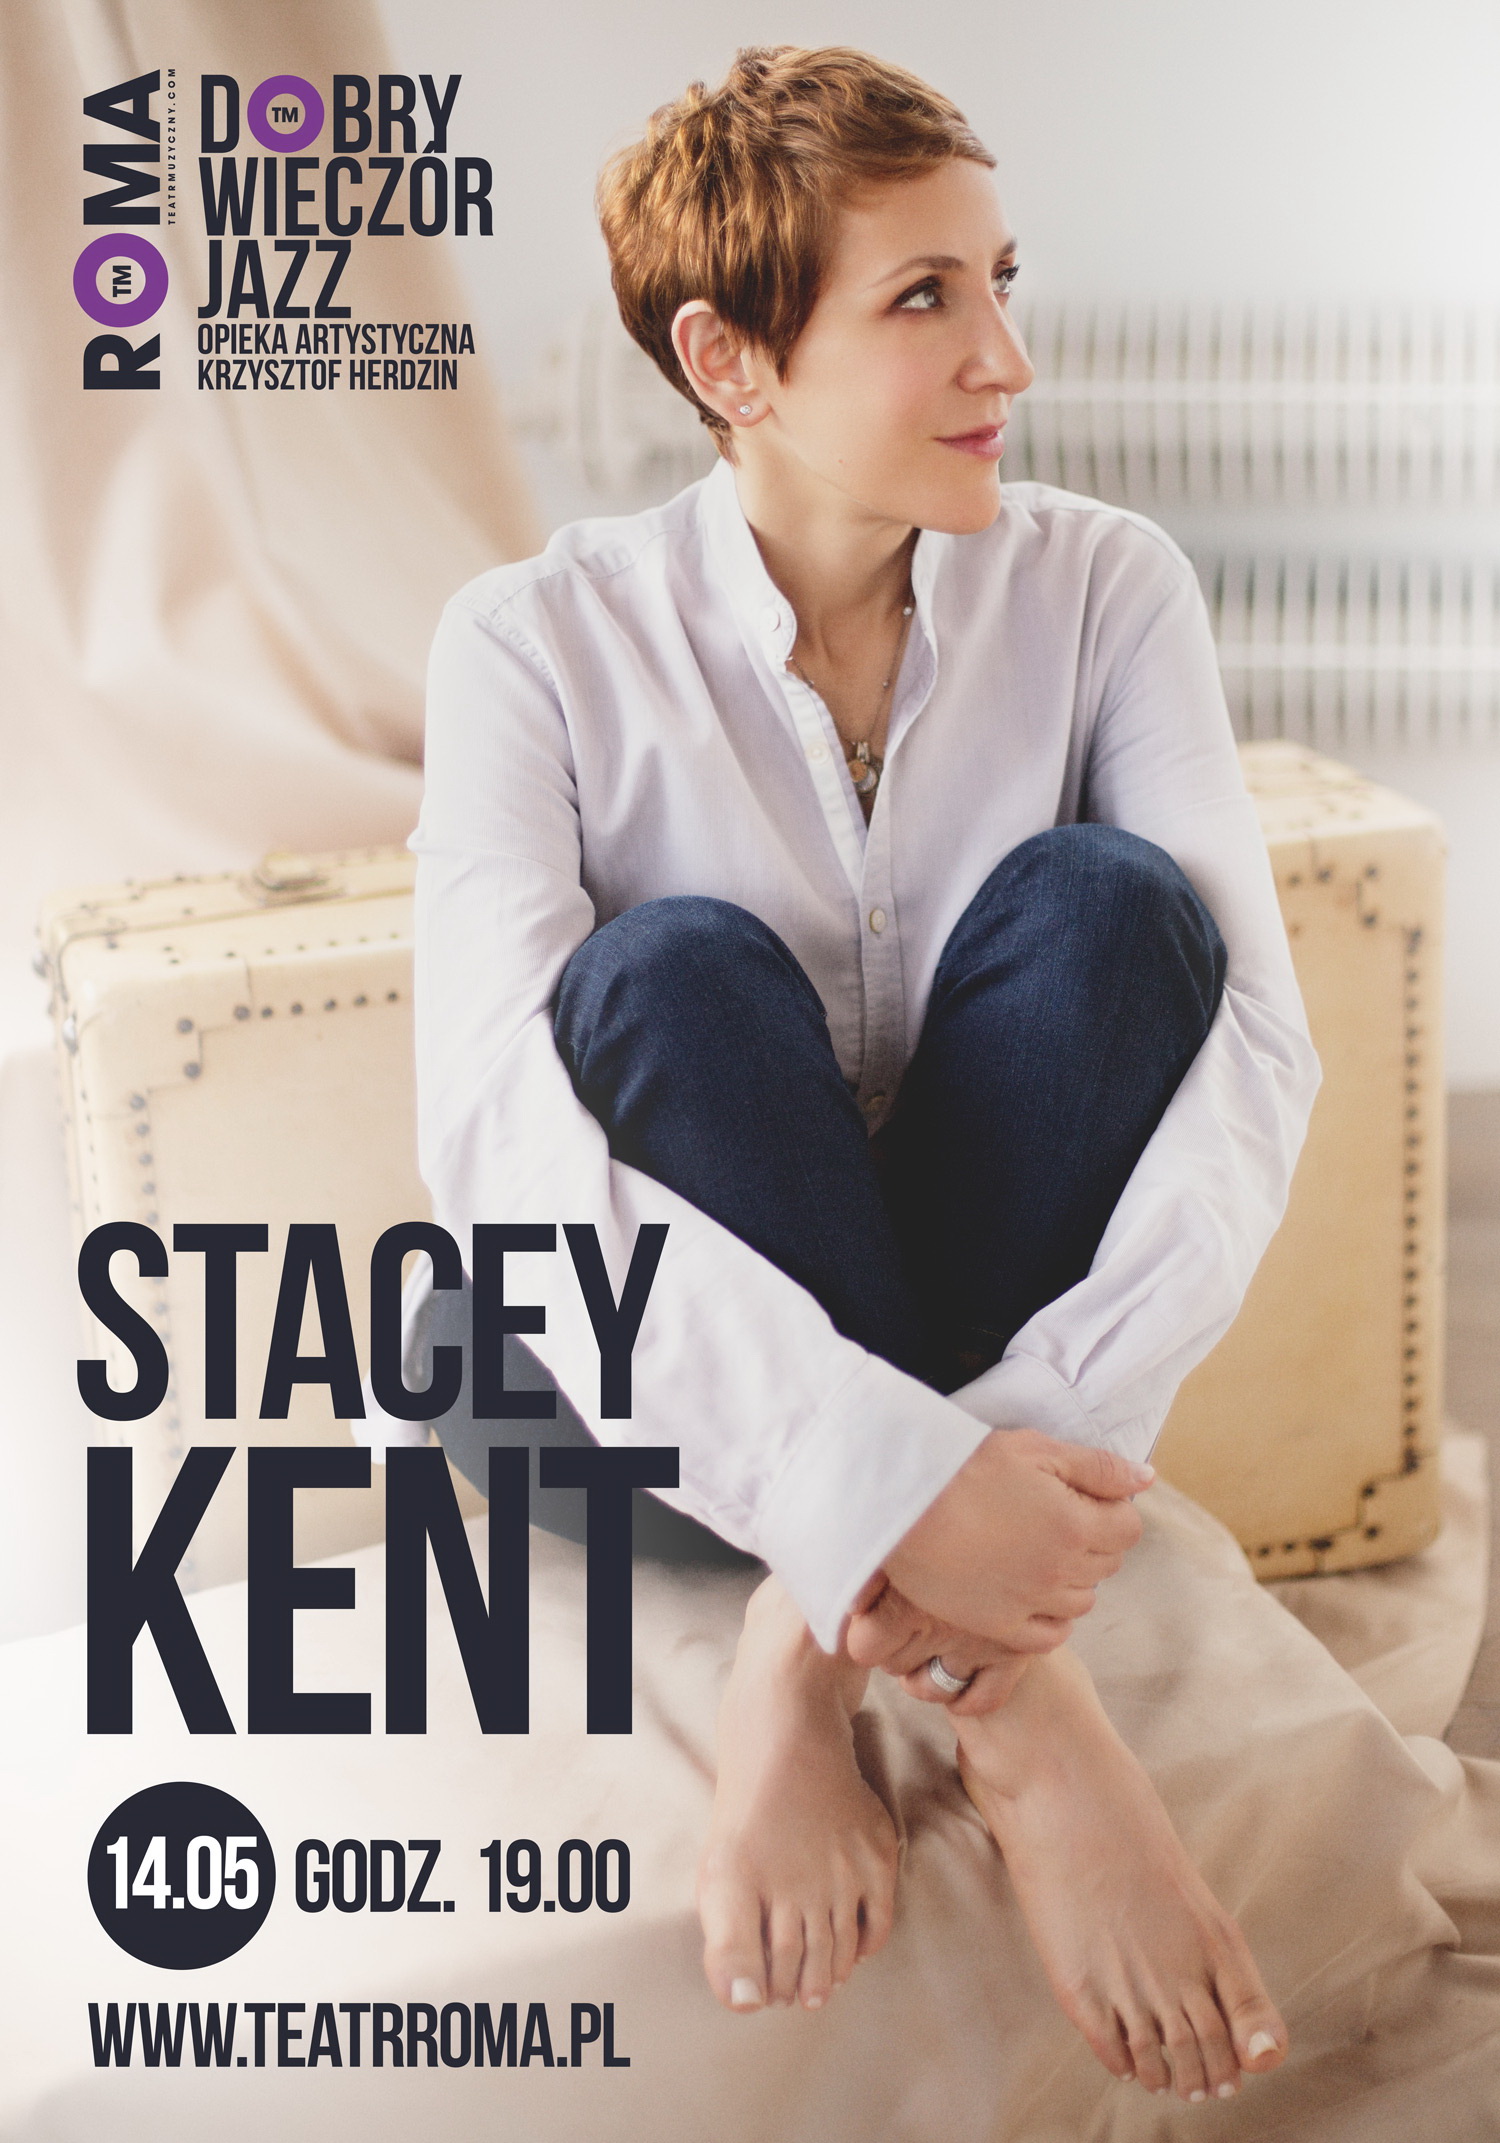 Stacey Kent - gwiazda jazzu wystąpi 14 maja w TM ROMA